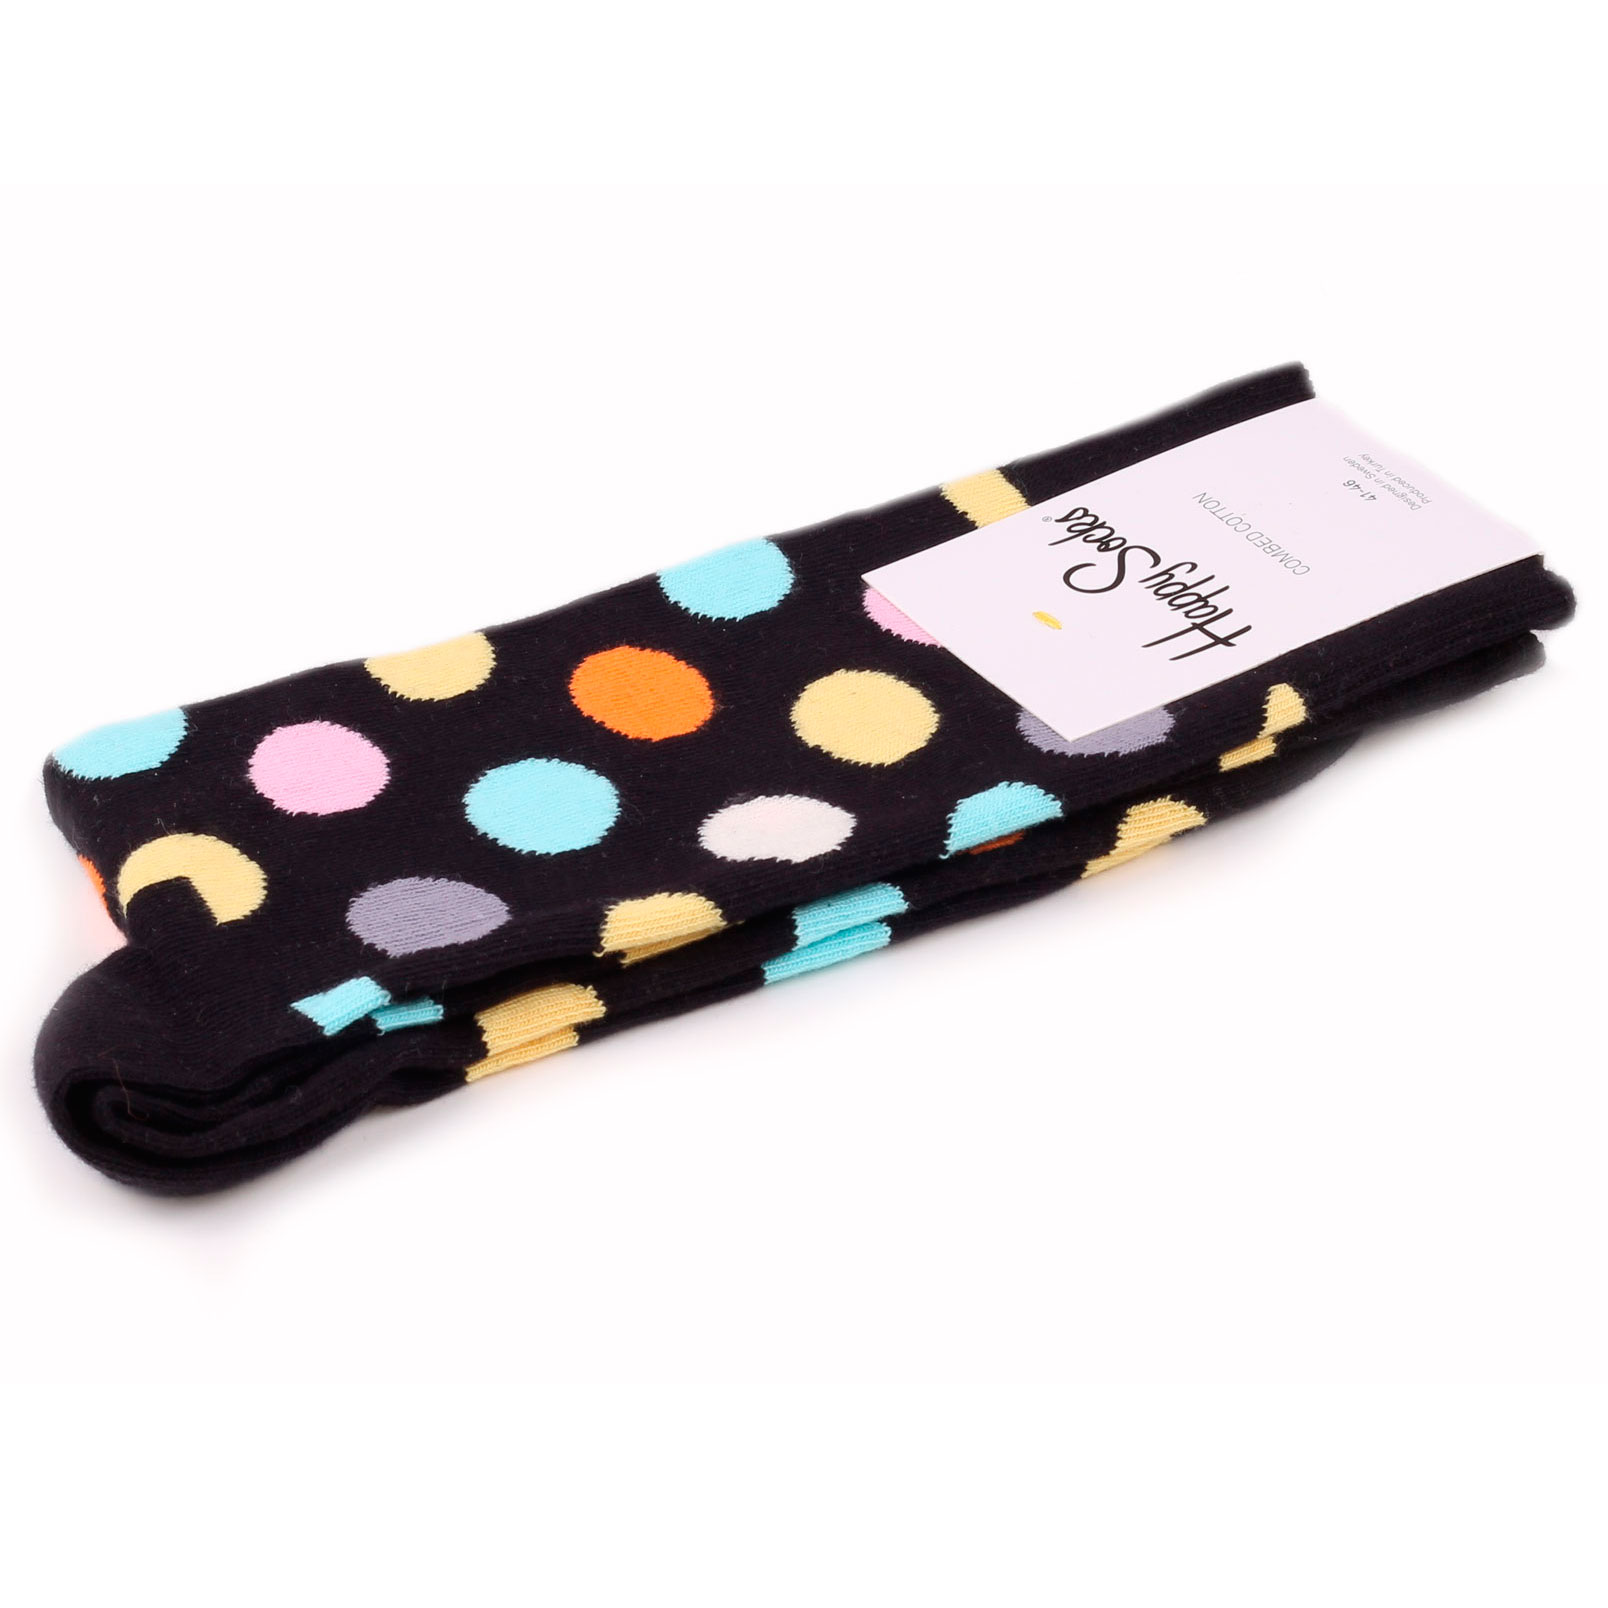 Носки Happy Socks Big Dot разноцветные 41-46